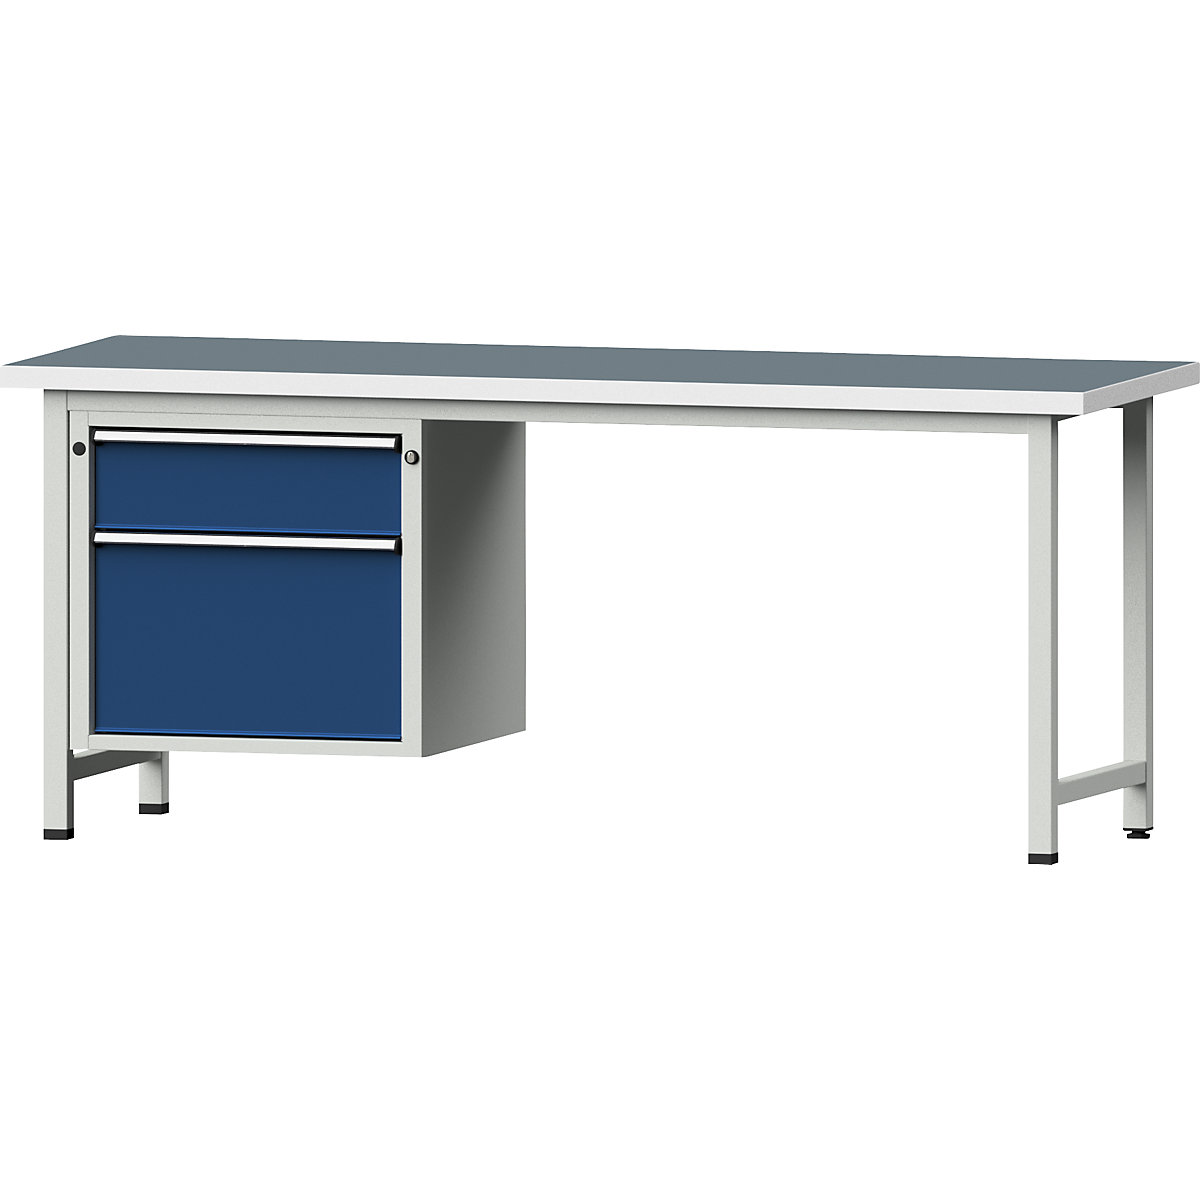 Dílenský stůl s rámovou konstrukcí – ANKE, 2 zásuvky, univerzální deska, šířka 2000 mm-12